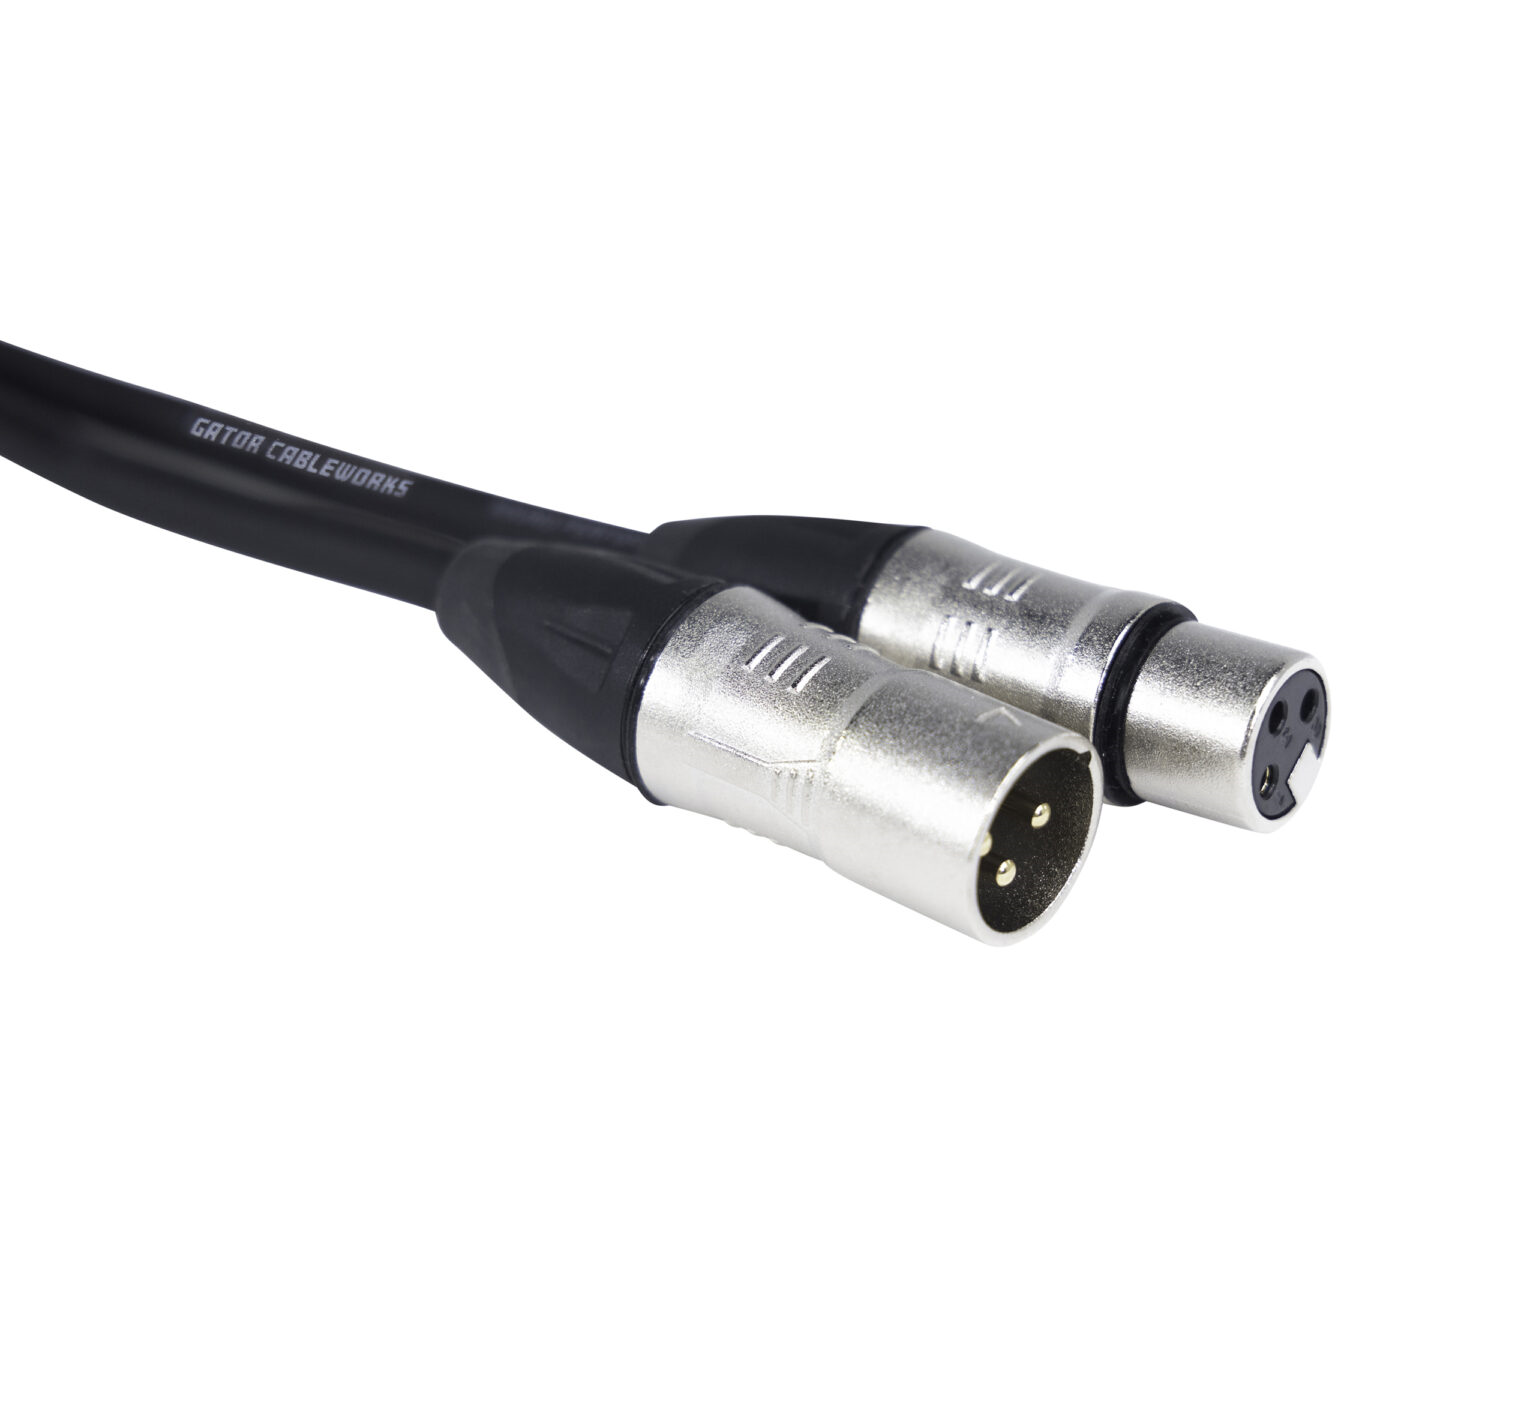 GCWB-XLR-30 30 Foot XLR Microphone Cable